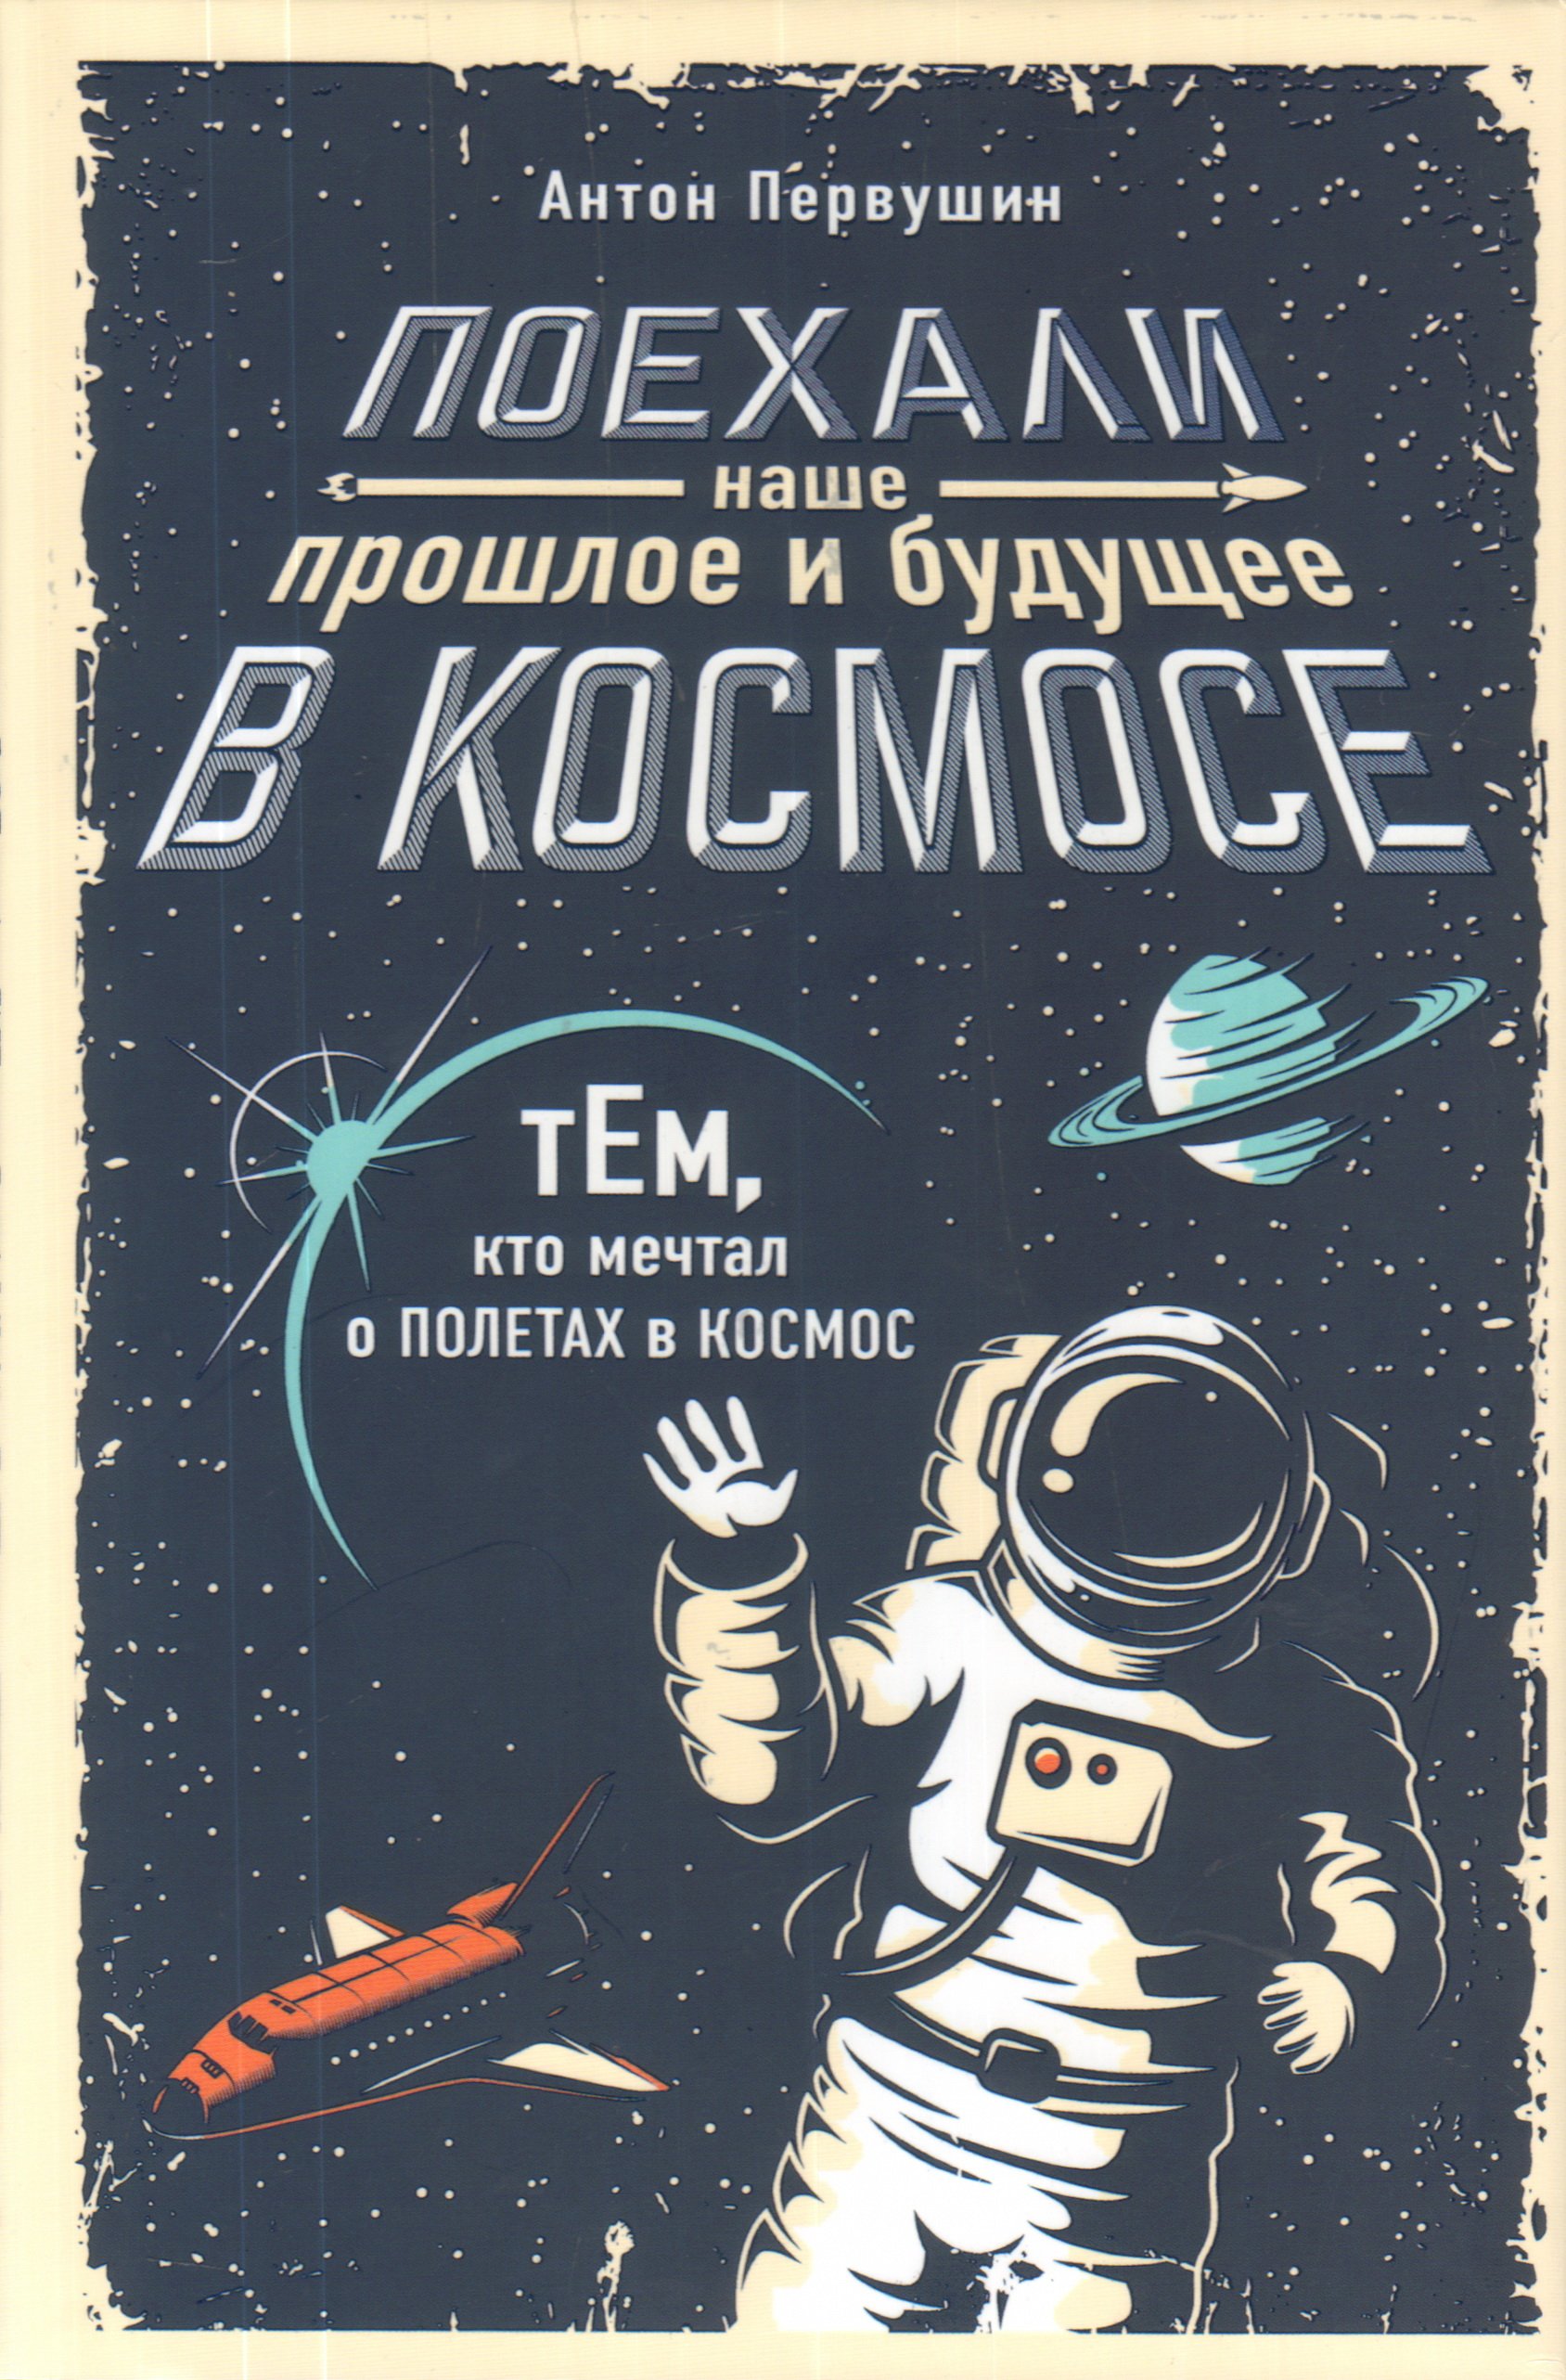 Вперед в космос читать. Книга космос. Научно-популярные книги. Советские книги про космос.